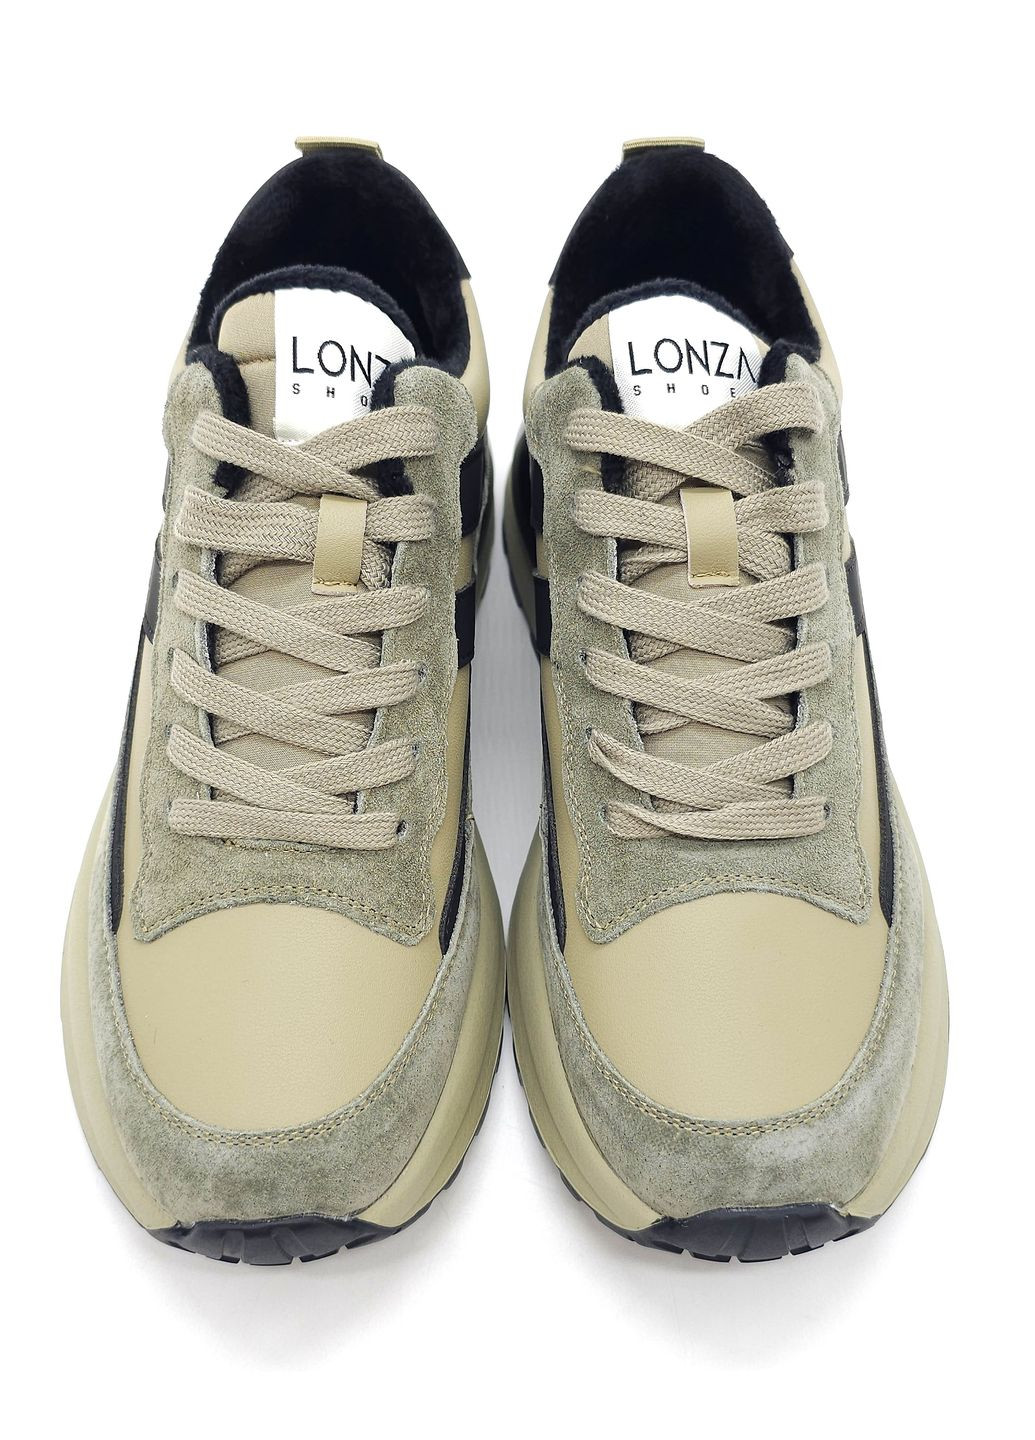 Оливковые (хаки) всесезонные женские кроссовки хаки кожаные l-10-34 23 см(р) Lonza